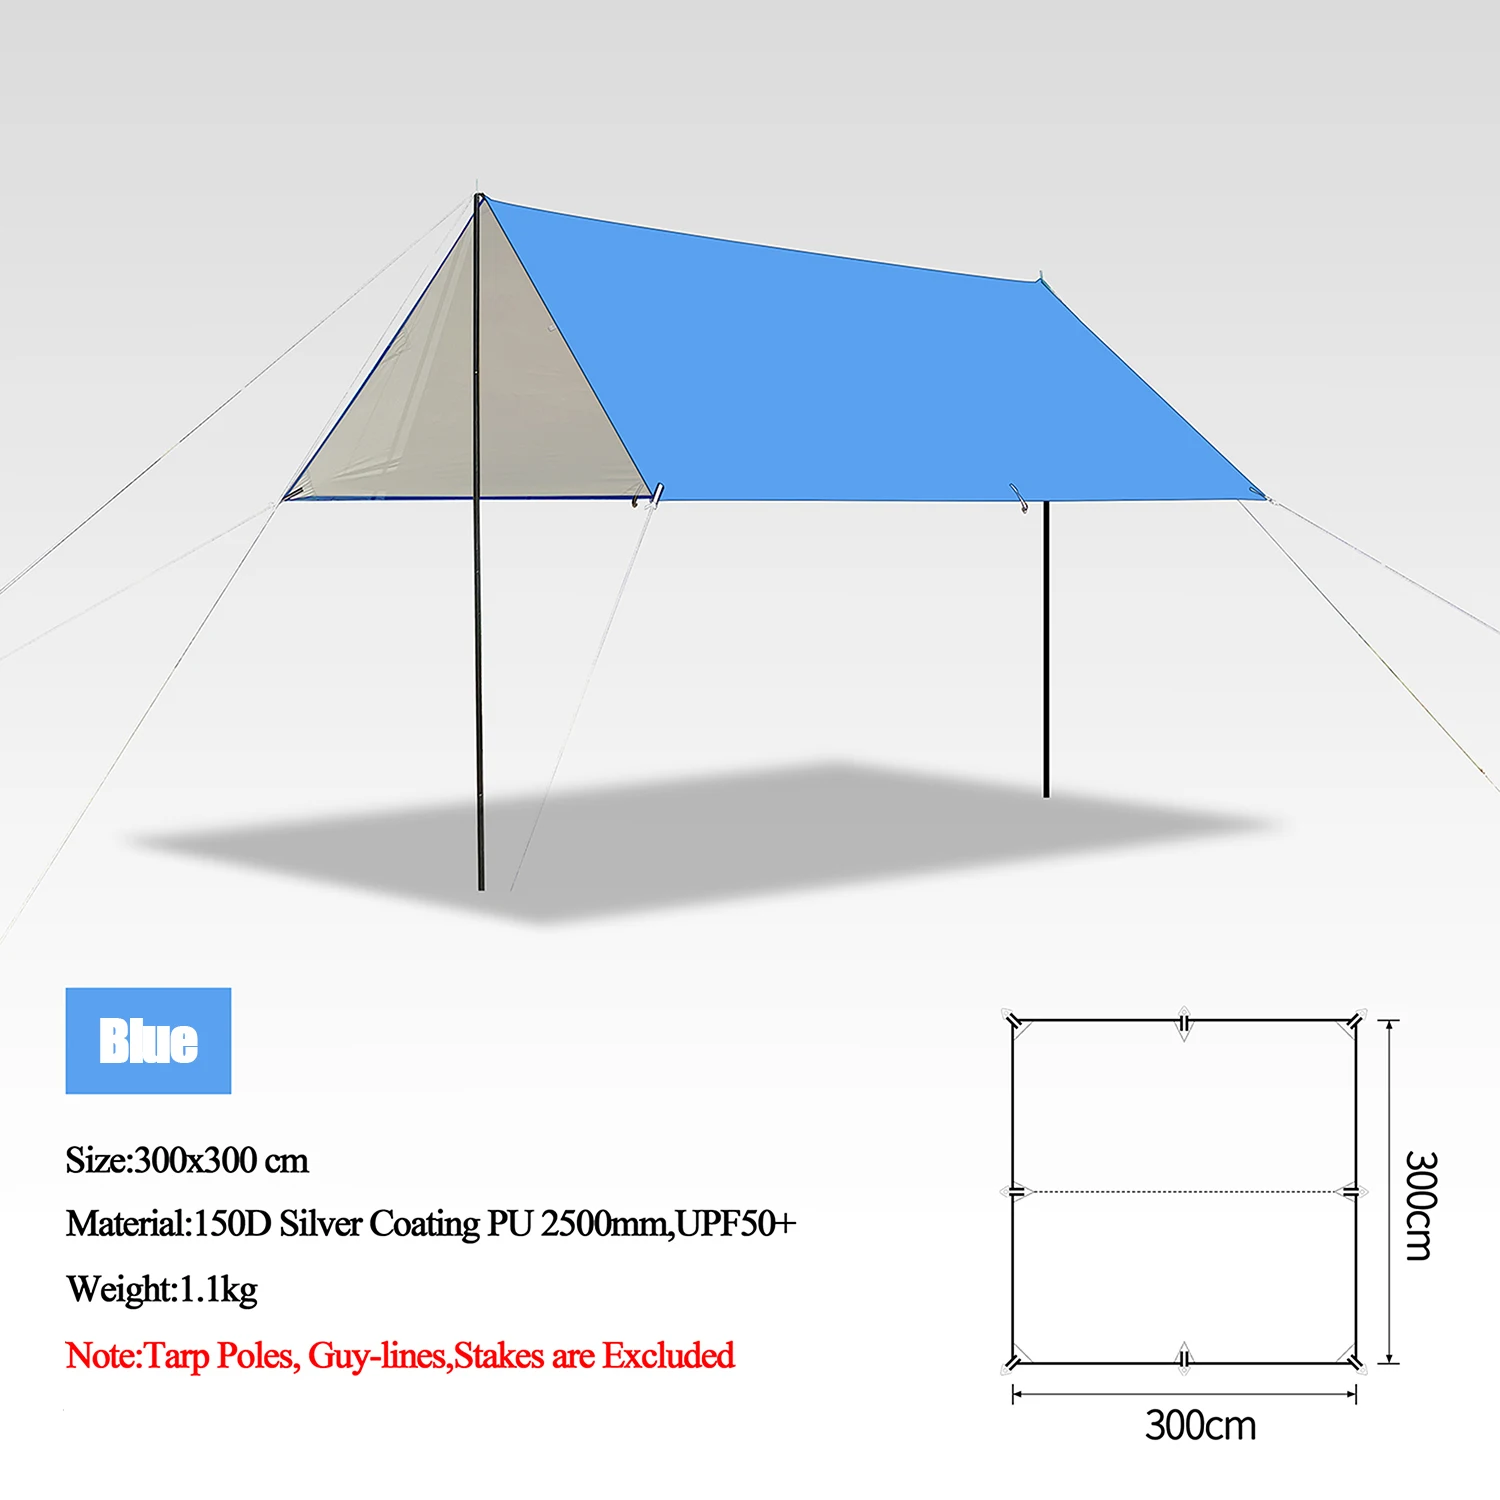 5x3m 4x3m 3x3m Awning Waterproof Tarp Tent Shade Ultralight Garden Canopy Sunshade Outdoor Camping Tourist Beach Sun Shelter